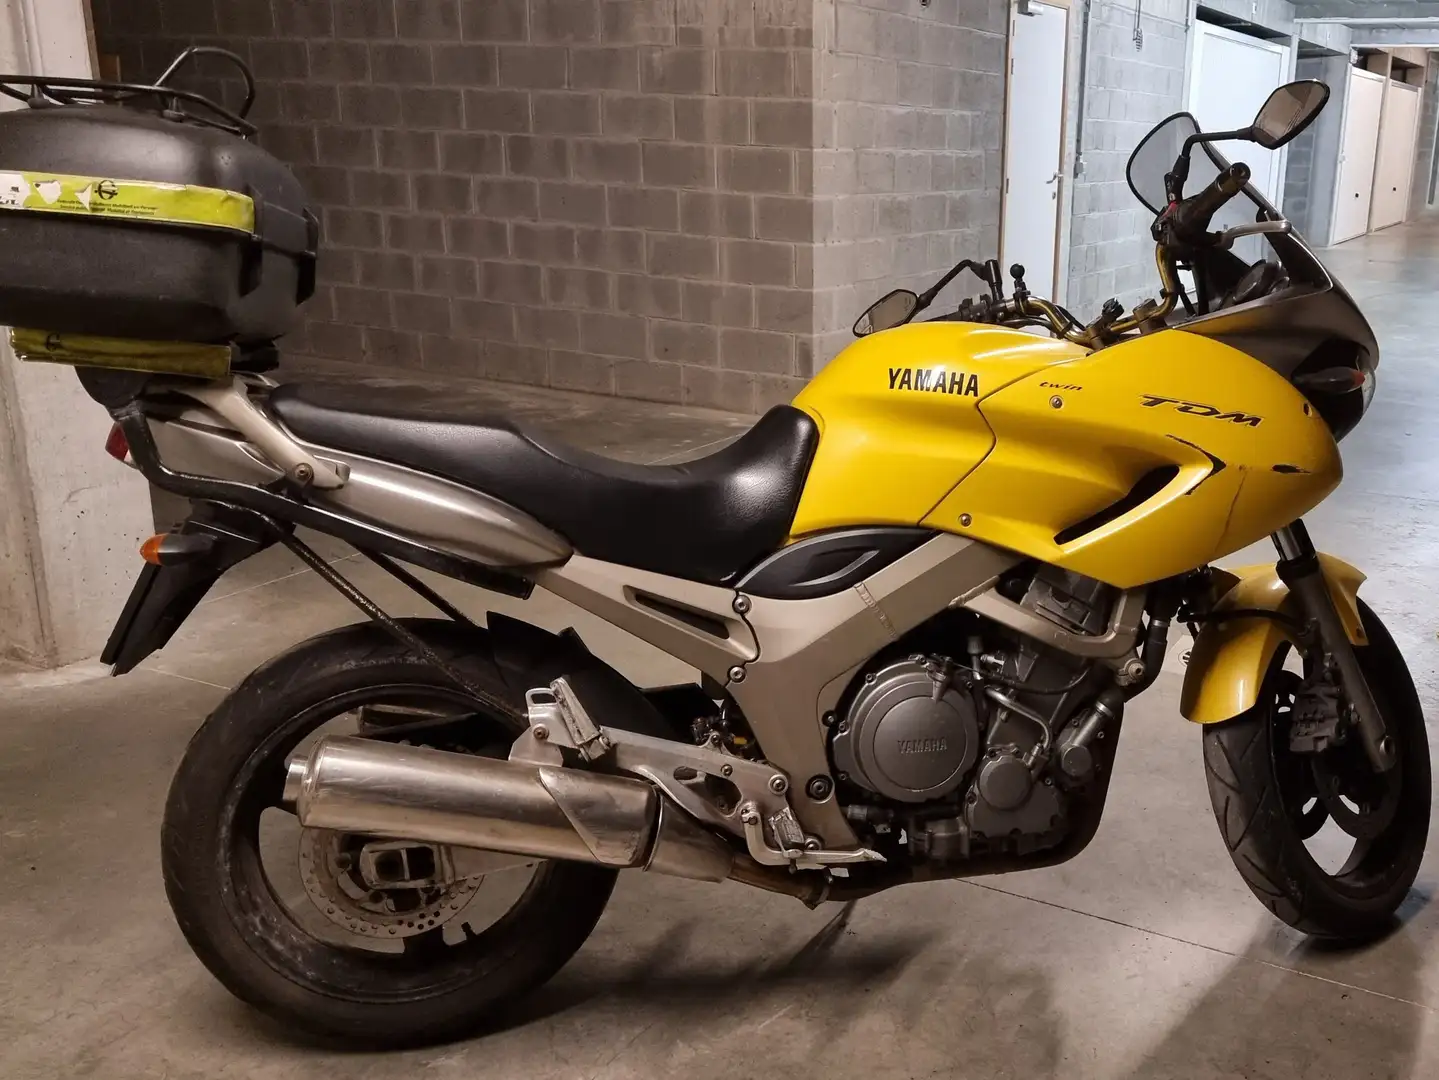 Yamaha TDM 900 Yellow - 2